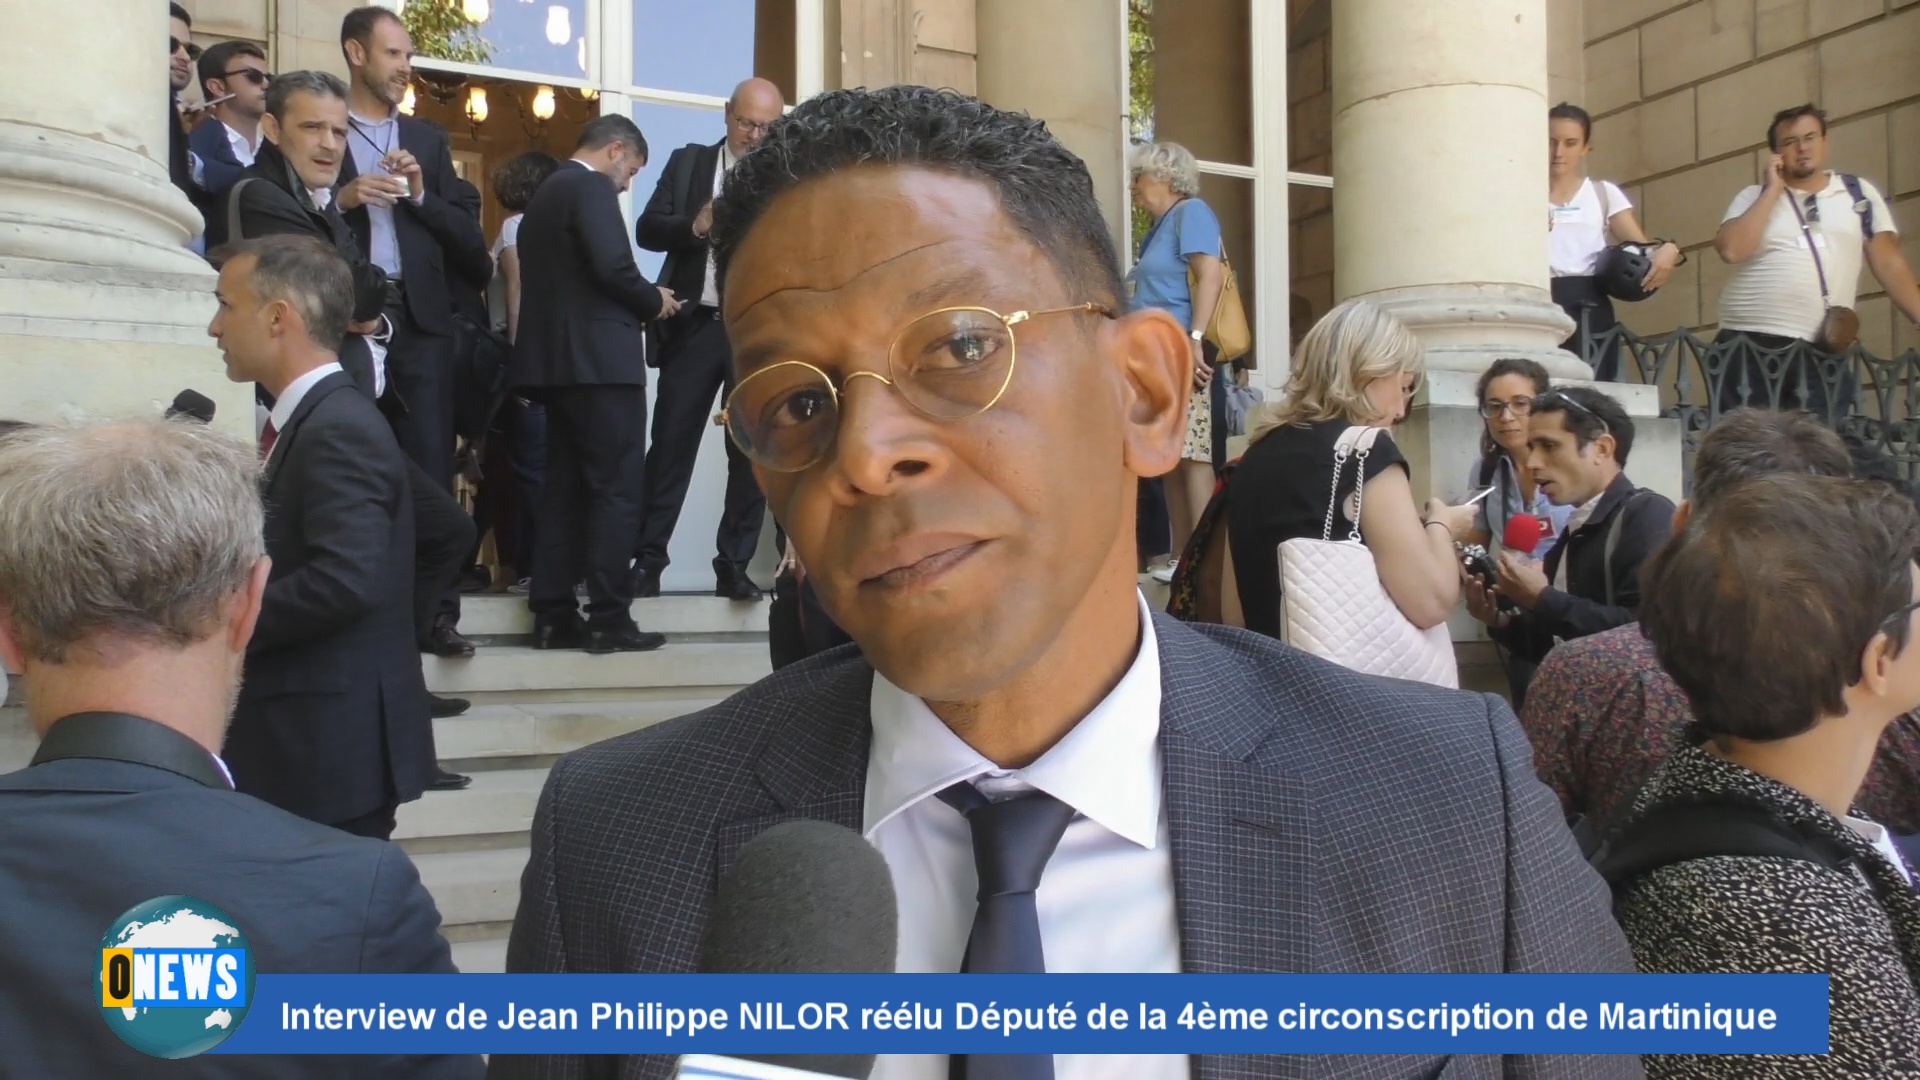 [Vidéo] Interview de Jean Philippe NILOR réélu Député de la 4ème circonscription de Martinique